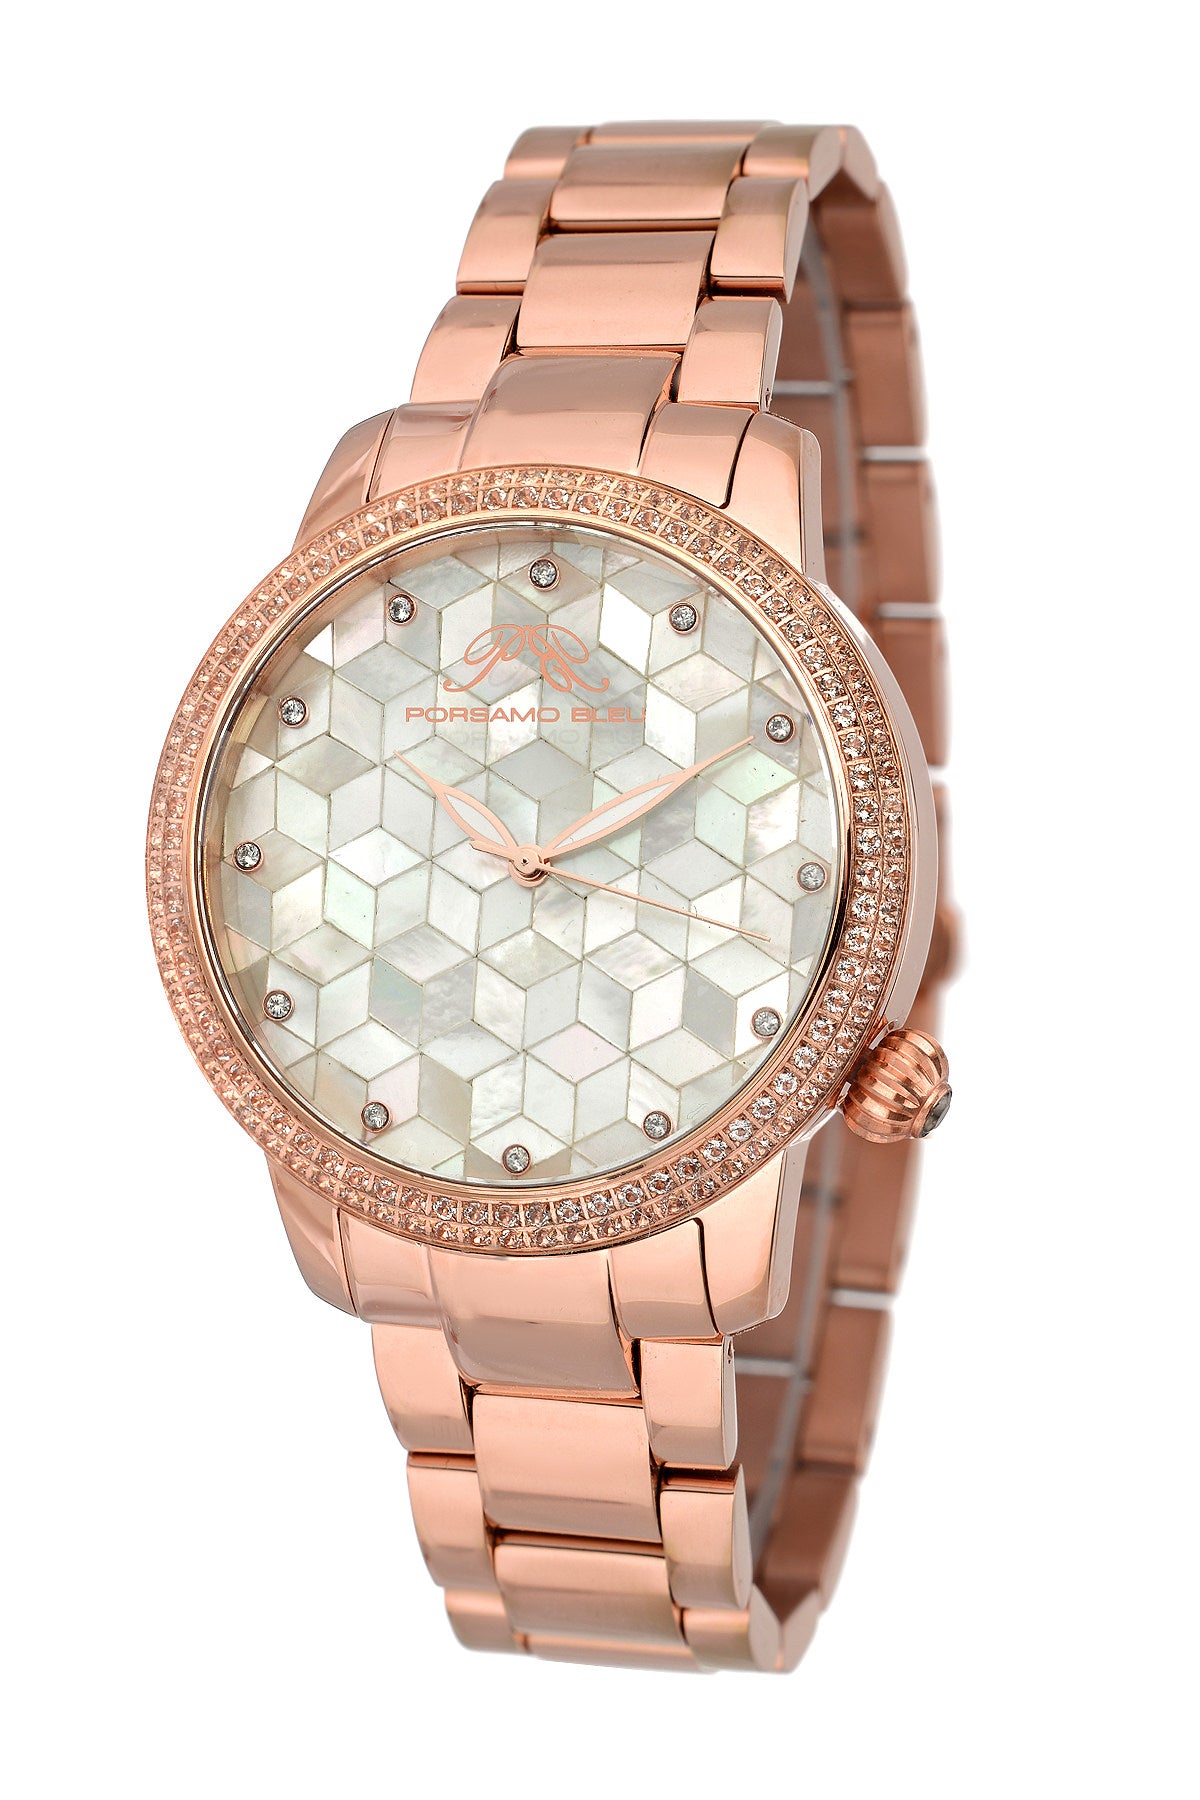 Porsamo Bleu Evelyn luxury topaz women's stainless steel watch, rose, white 761CEVS